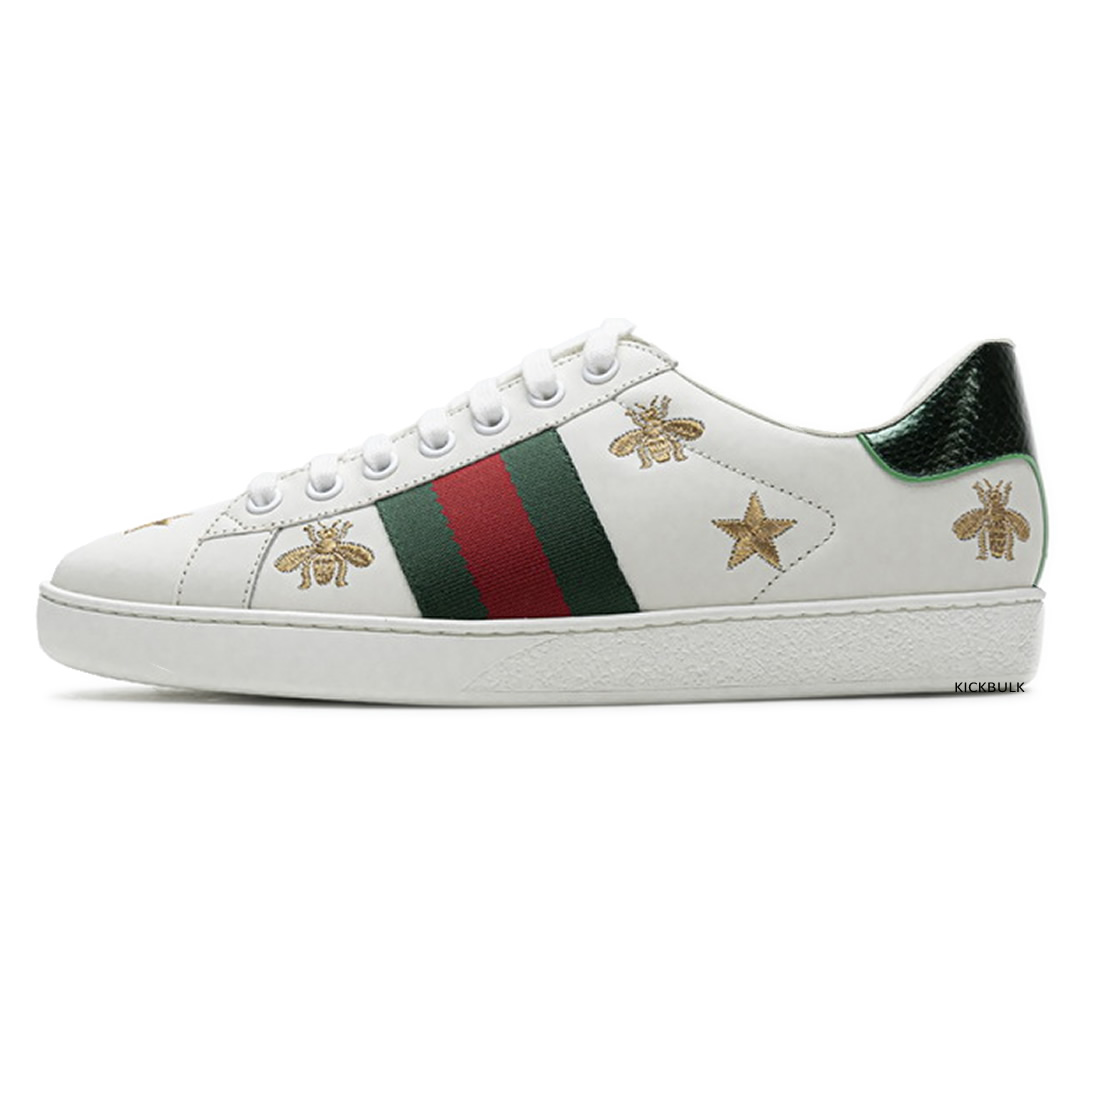 Gucci Stars Sneakers 429446a39gq9085 1 - www.kickbulk.co